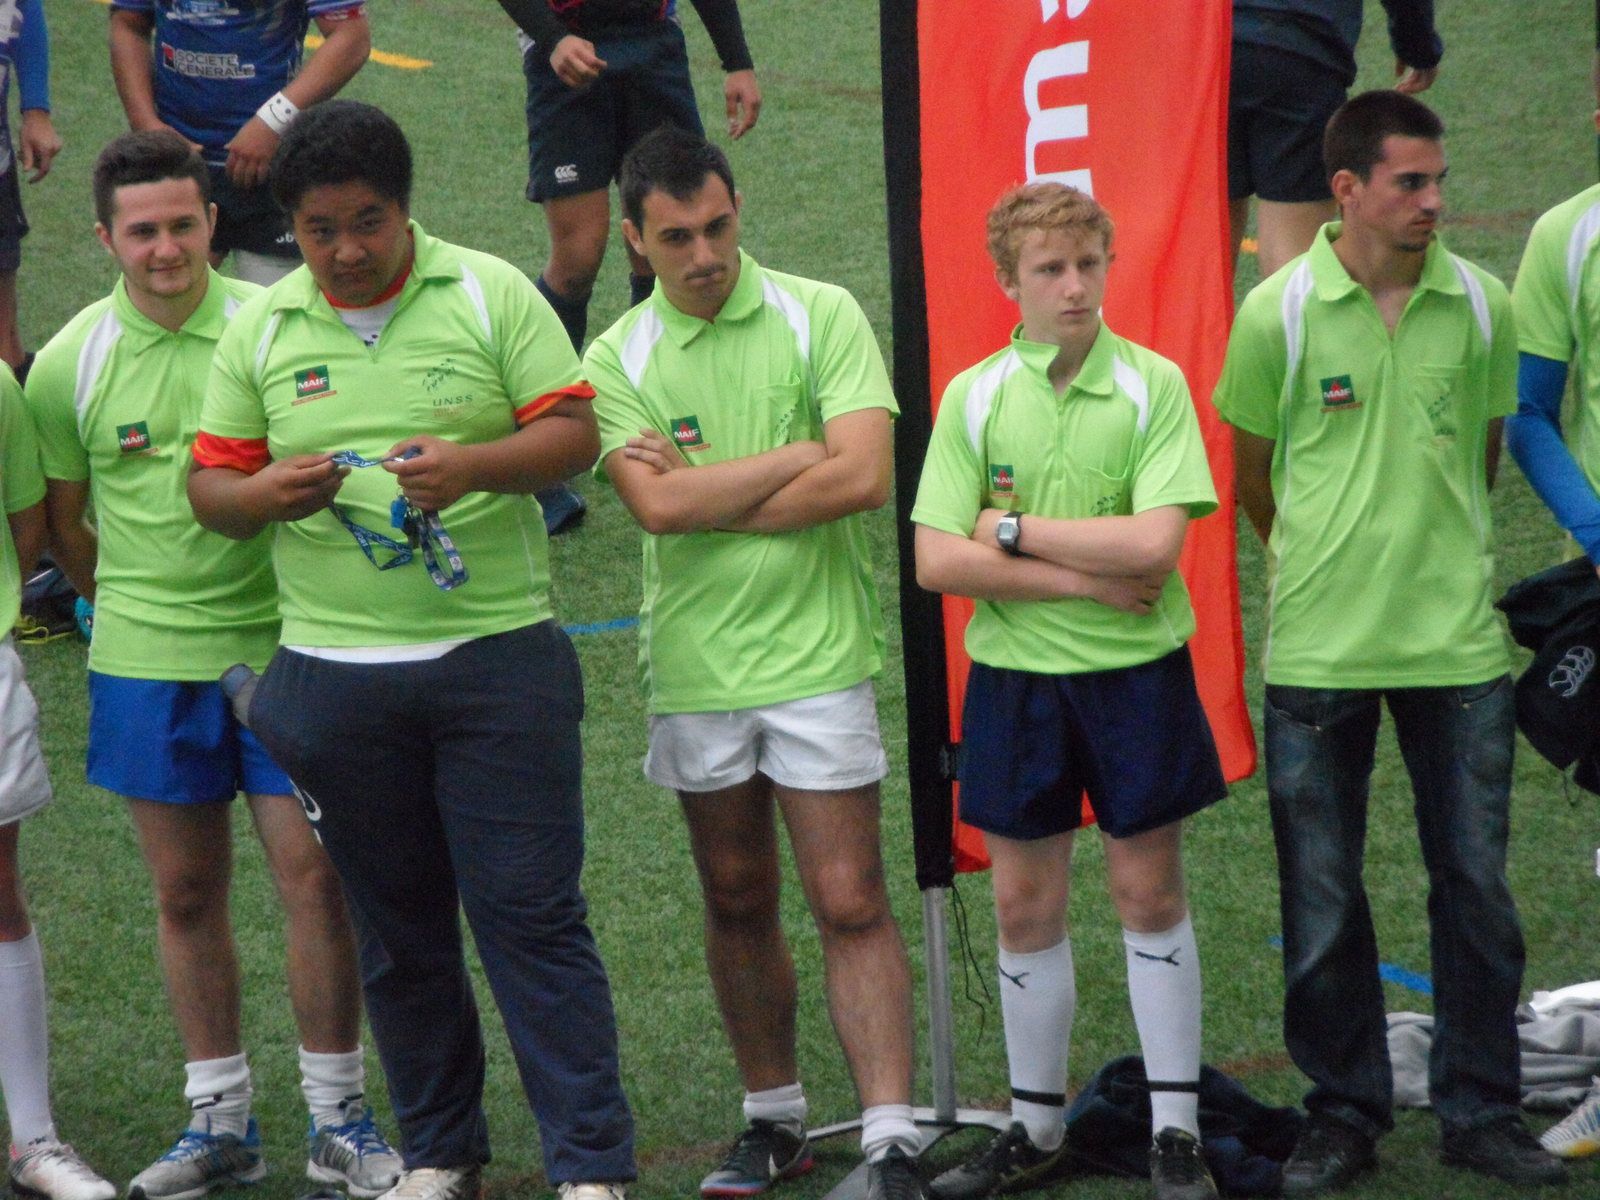 Les cadets rugby, 6 ème, en photos